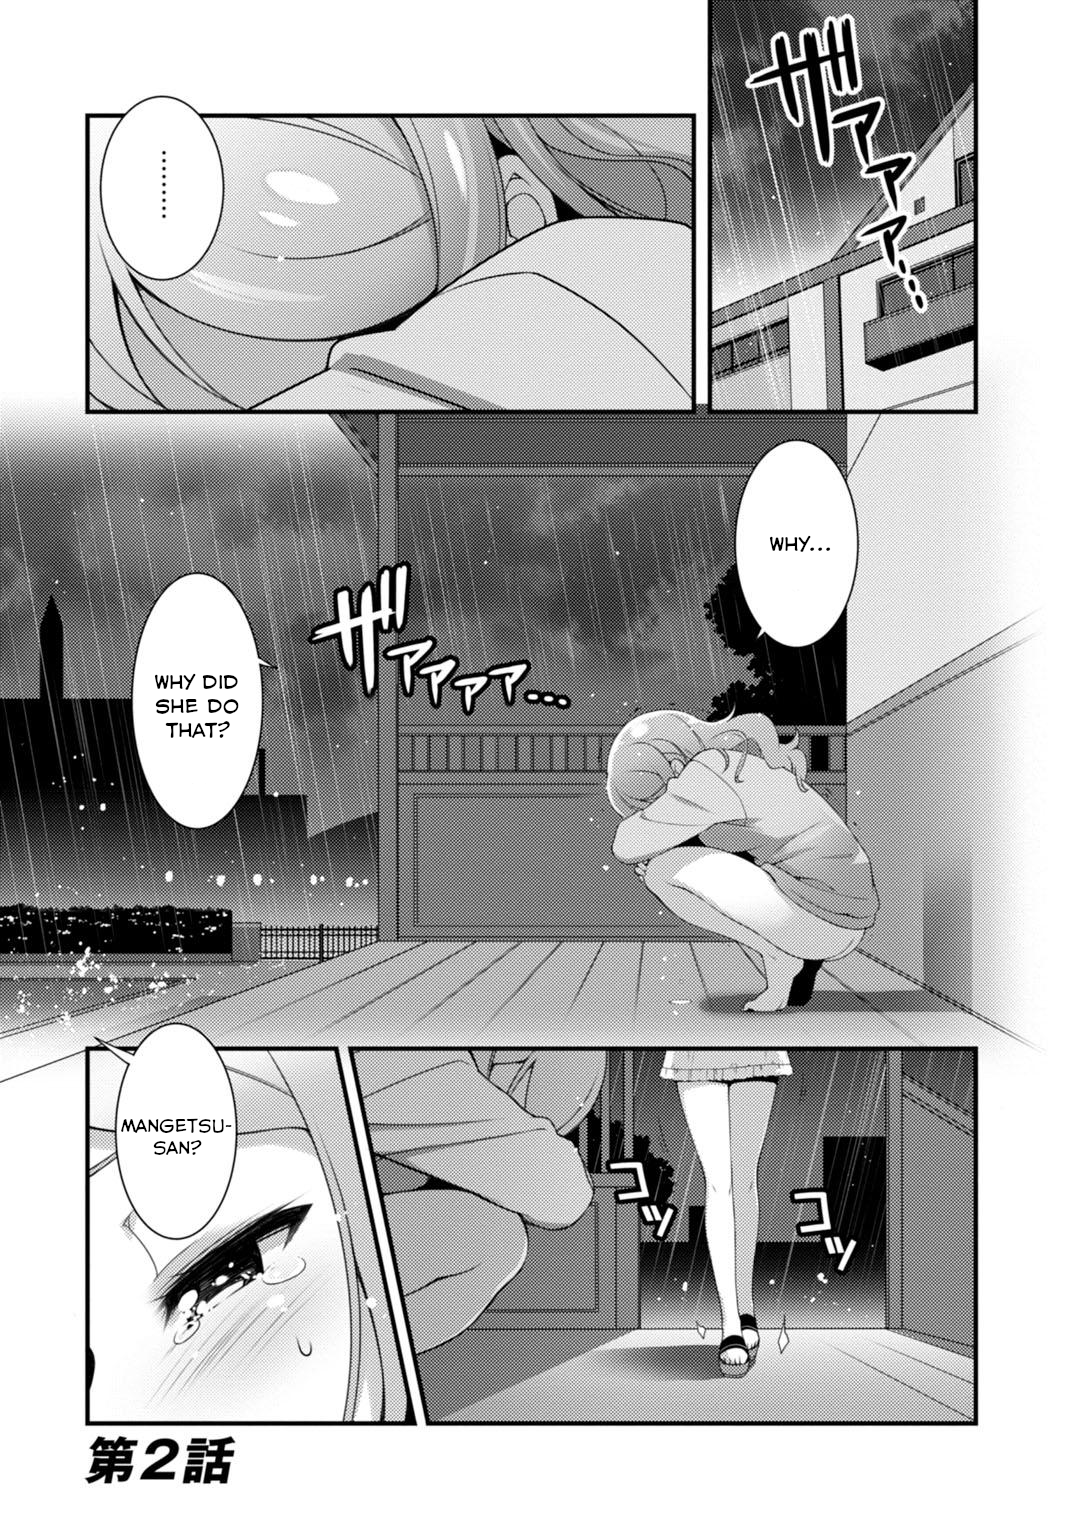 Sakura Nadeshiko - Page 1